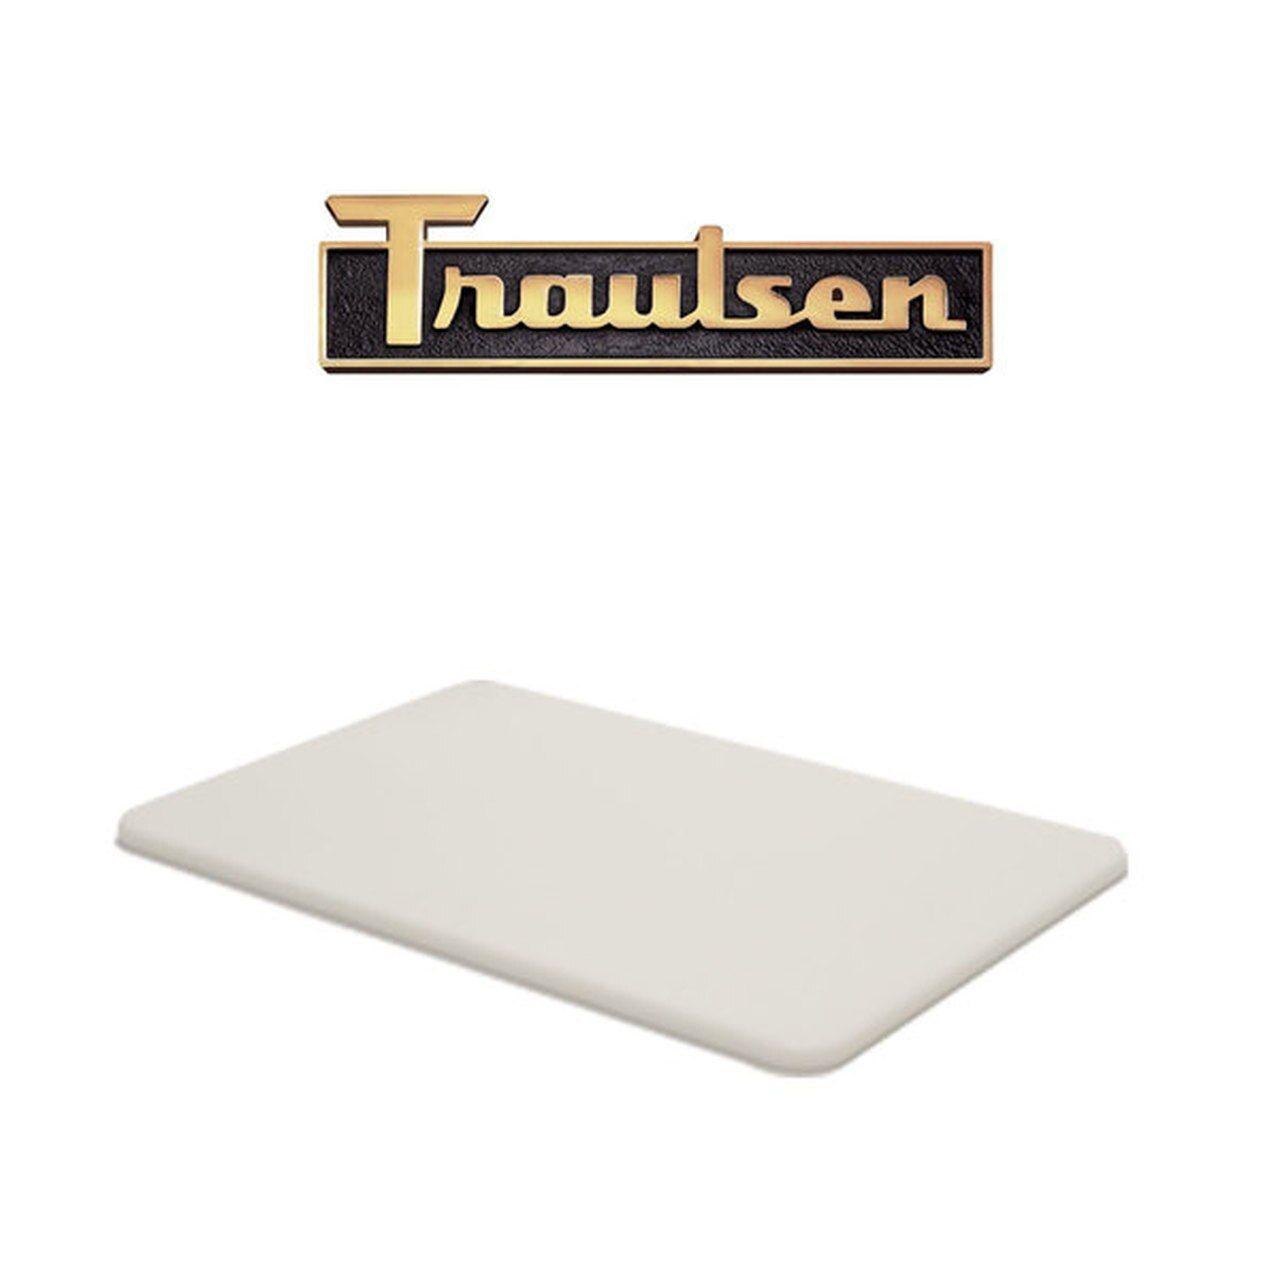 Traulsen Logo - OEM Cutting Board#: 340 60172 12